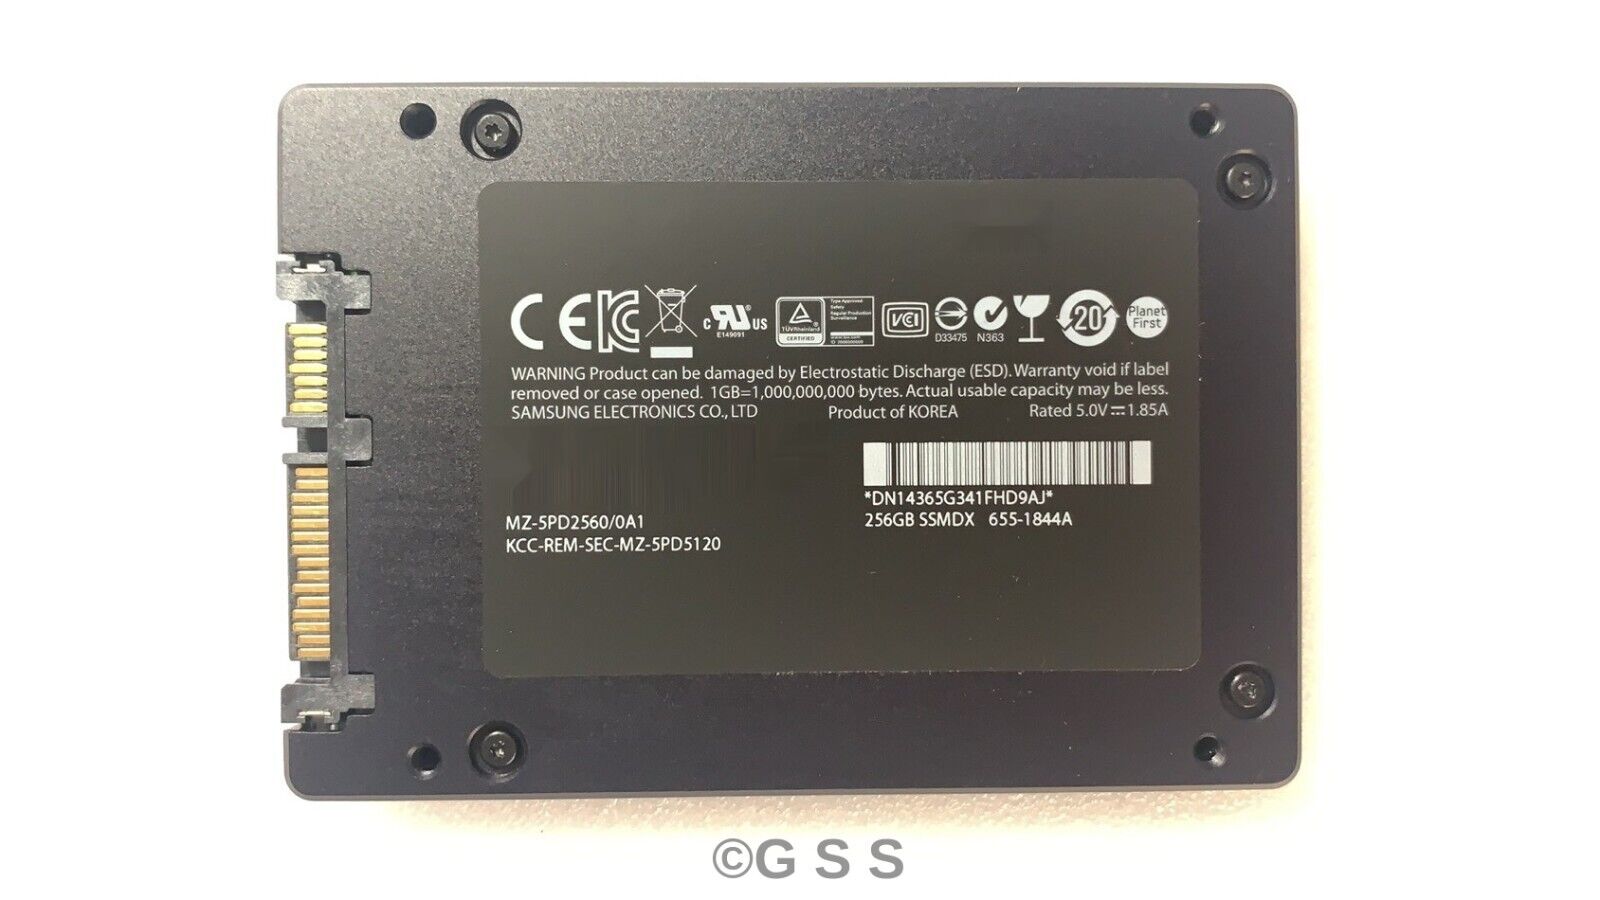 New Samsung MZ-5PD2560/0A1 256GB Hard Drive Sata SSD